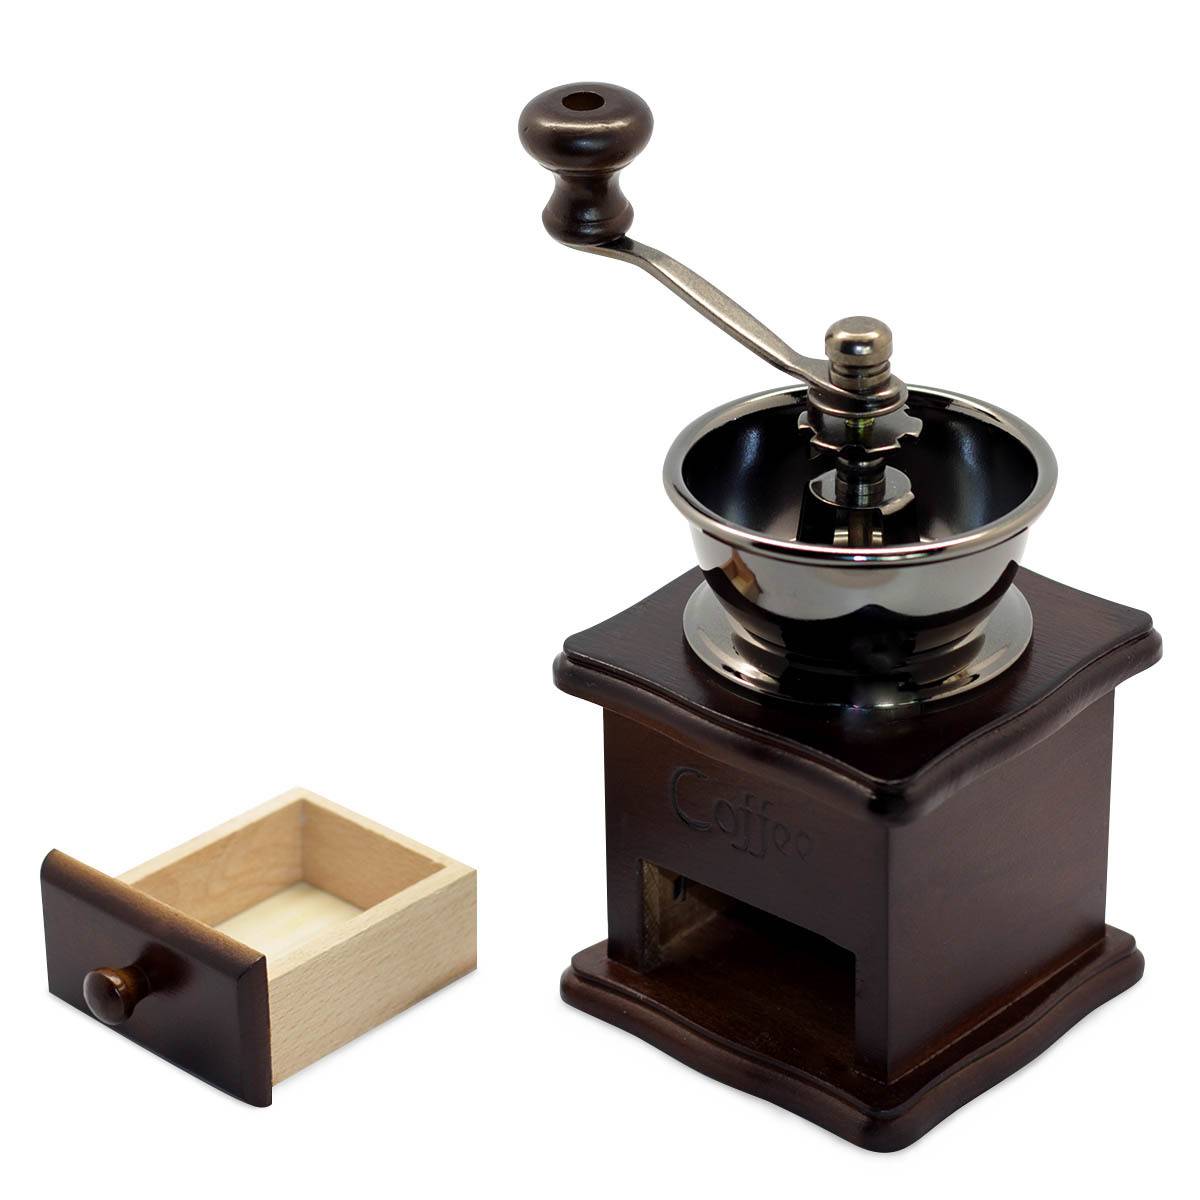 Кофемолка: ручная деревянная и механическая мельница для кофе, как выбрать гриндер с регулировкой степени помола, как настроить